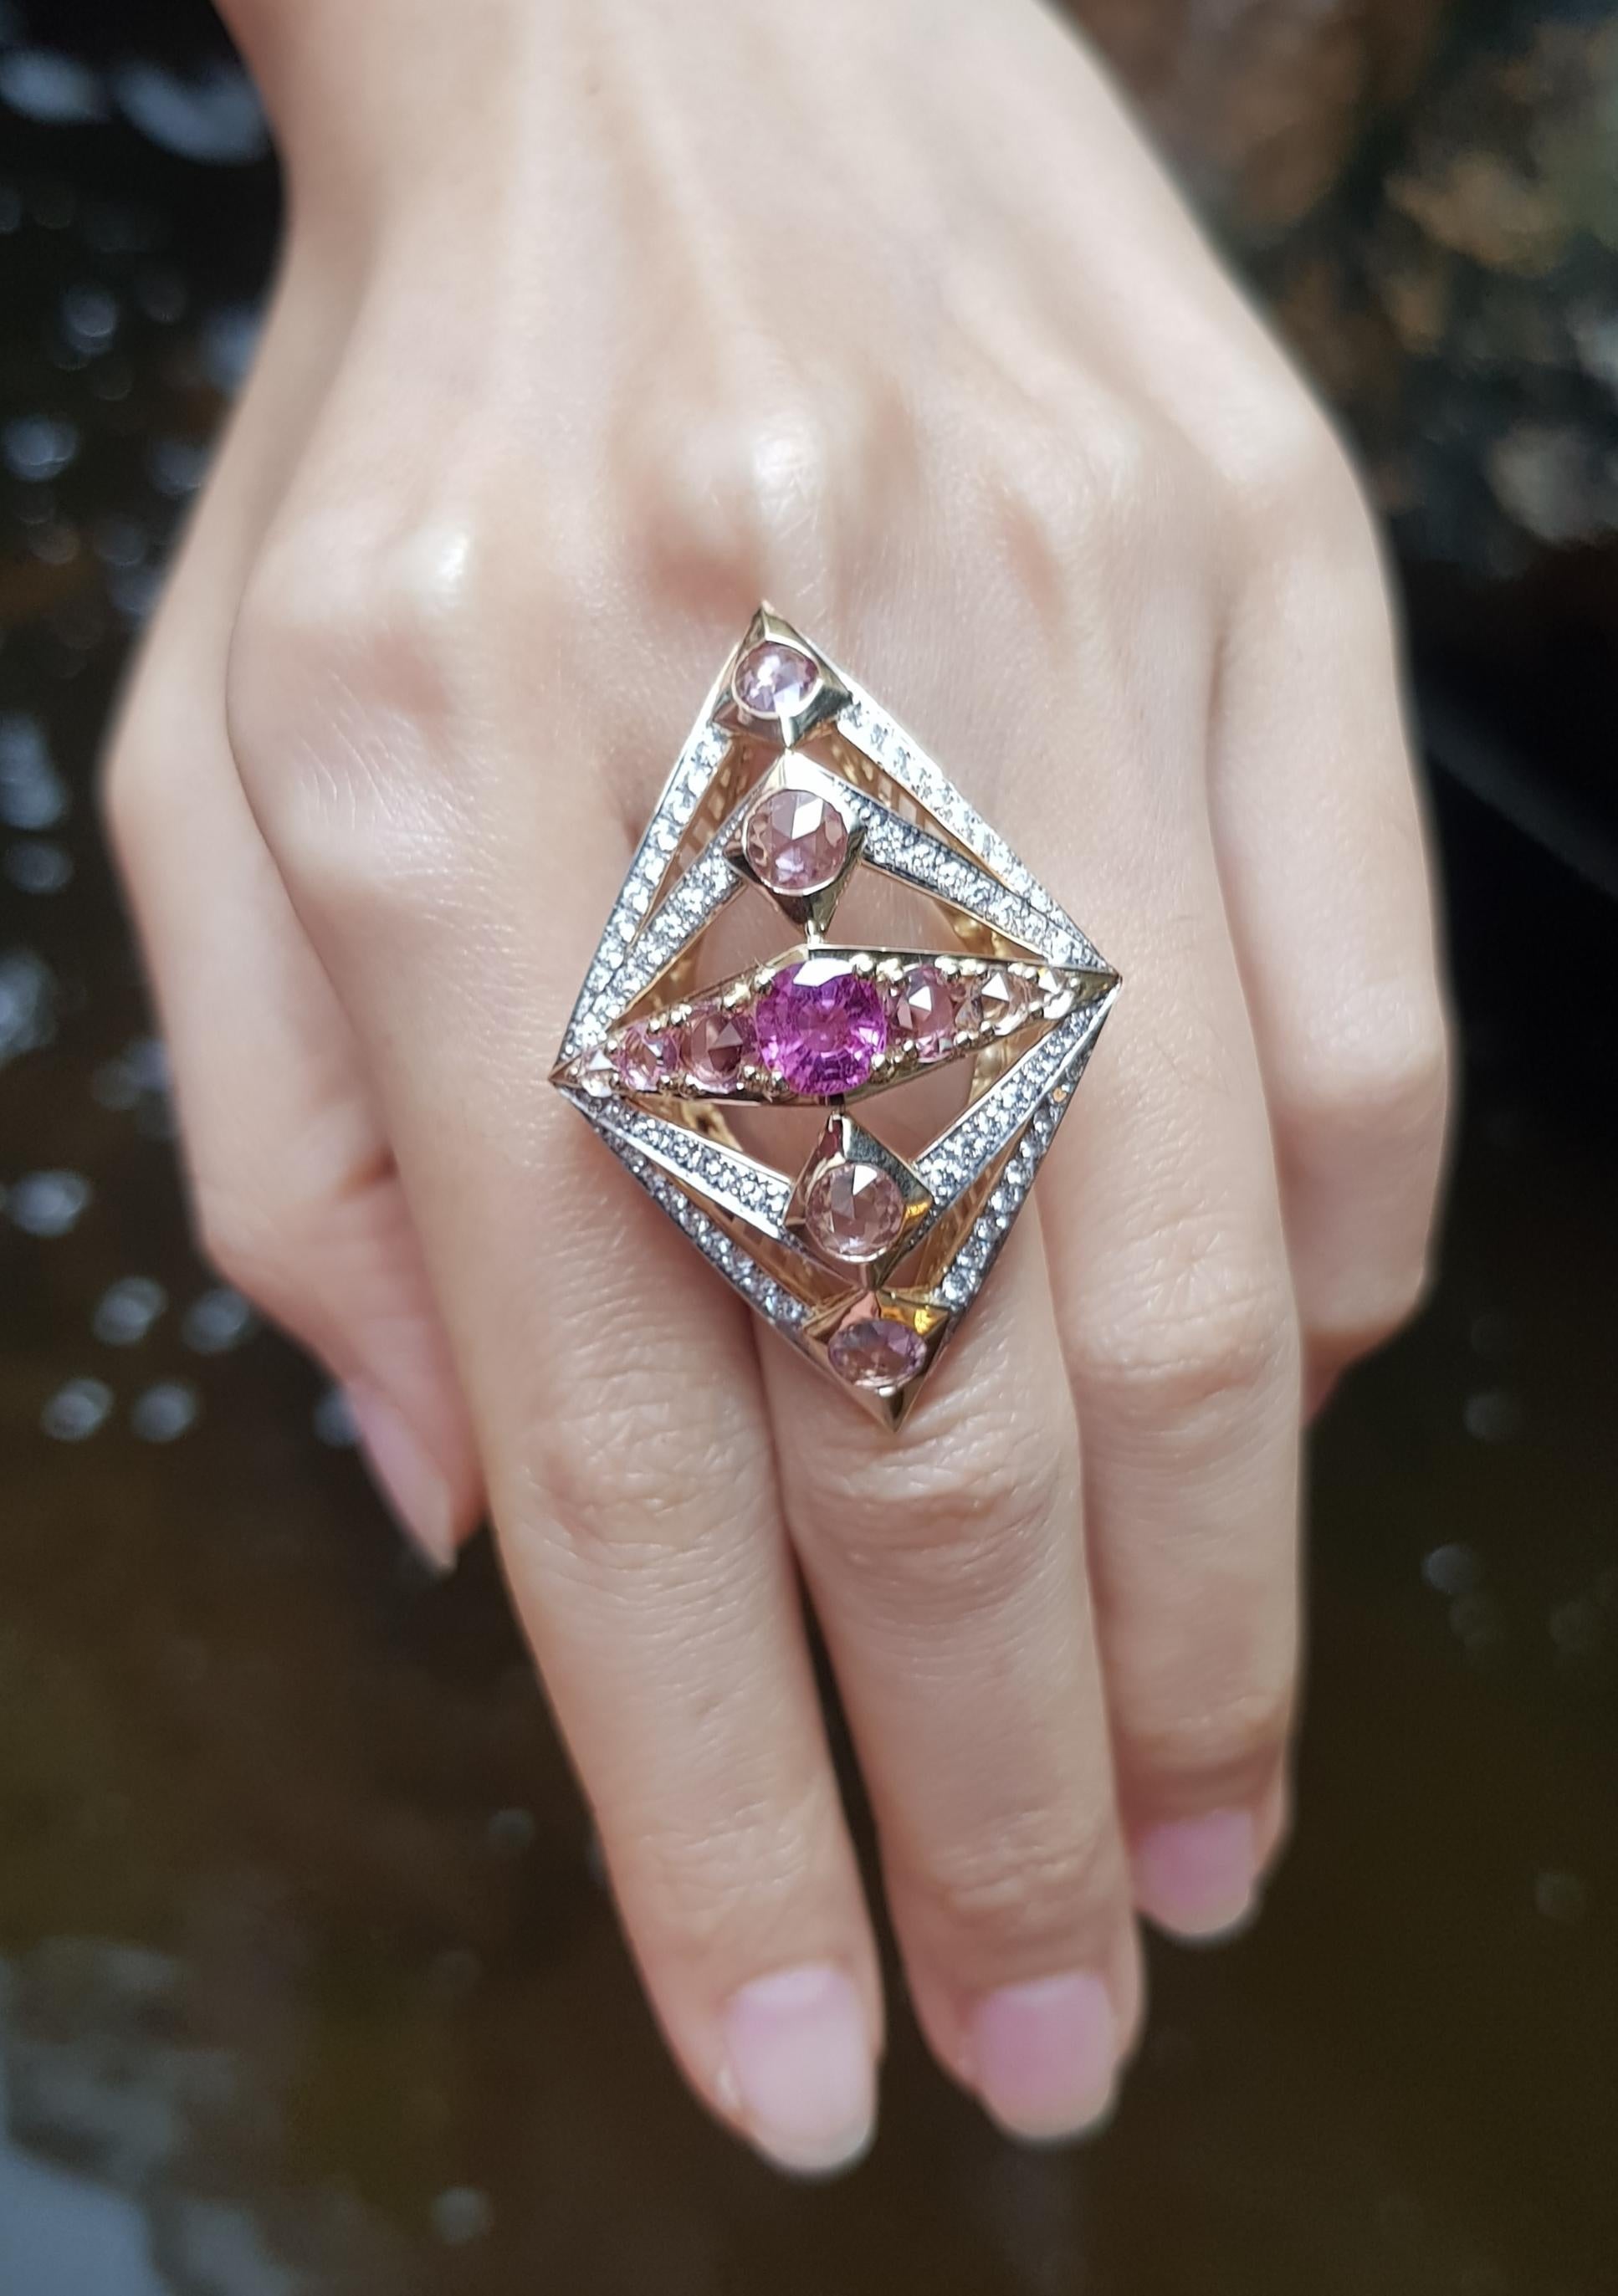 Pink Sapphire 1.59 carats Pink Sapphire 4.39 carats and Diamond 00 carat Ring set in18 Karat Gold Settings

Width:  3.0 cm 
Length: 4.8 cm
Ring Size: 53
Total Weight: 16.02 grams

